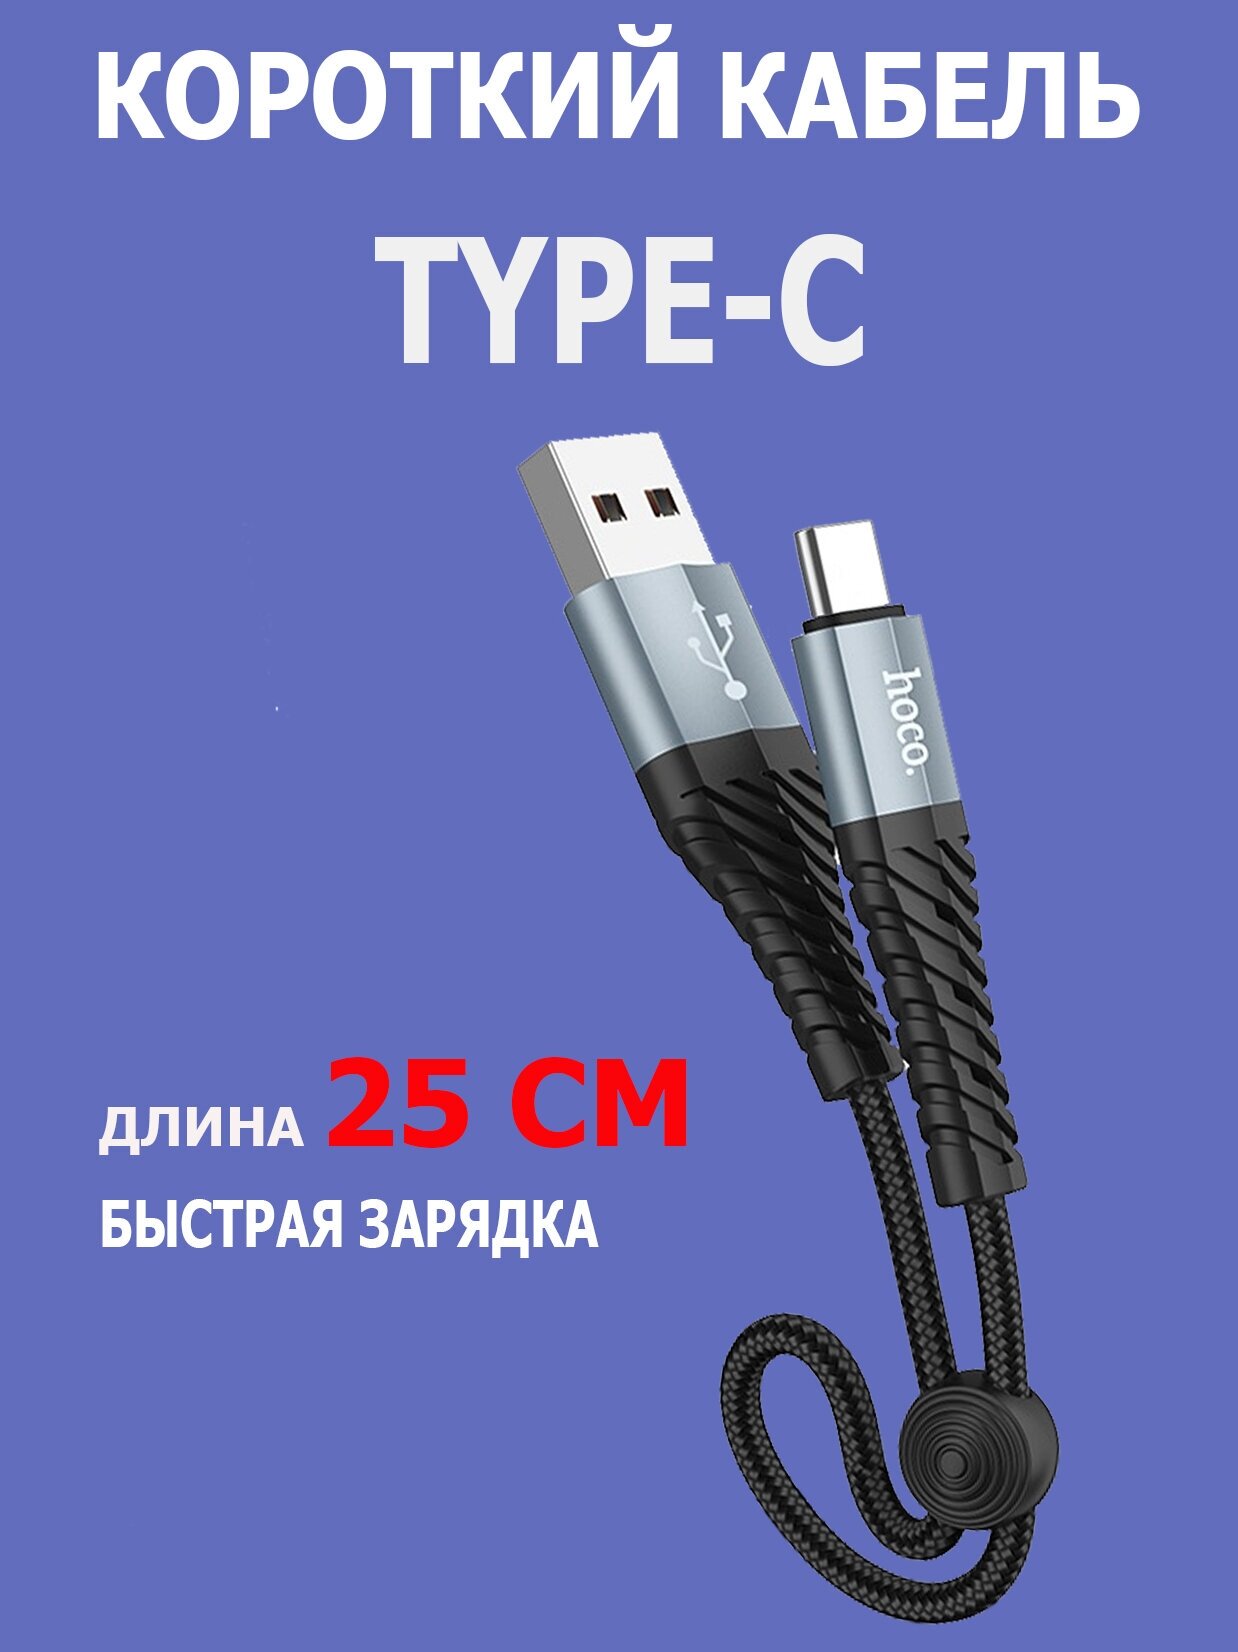 Короткий кабель Type-C быстрая зарядка